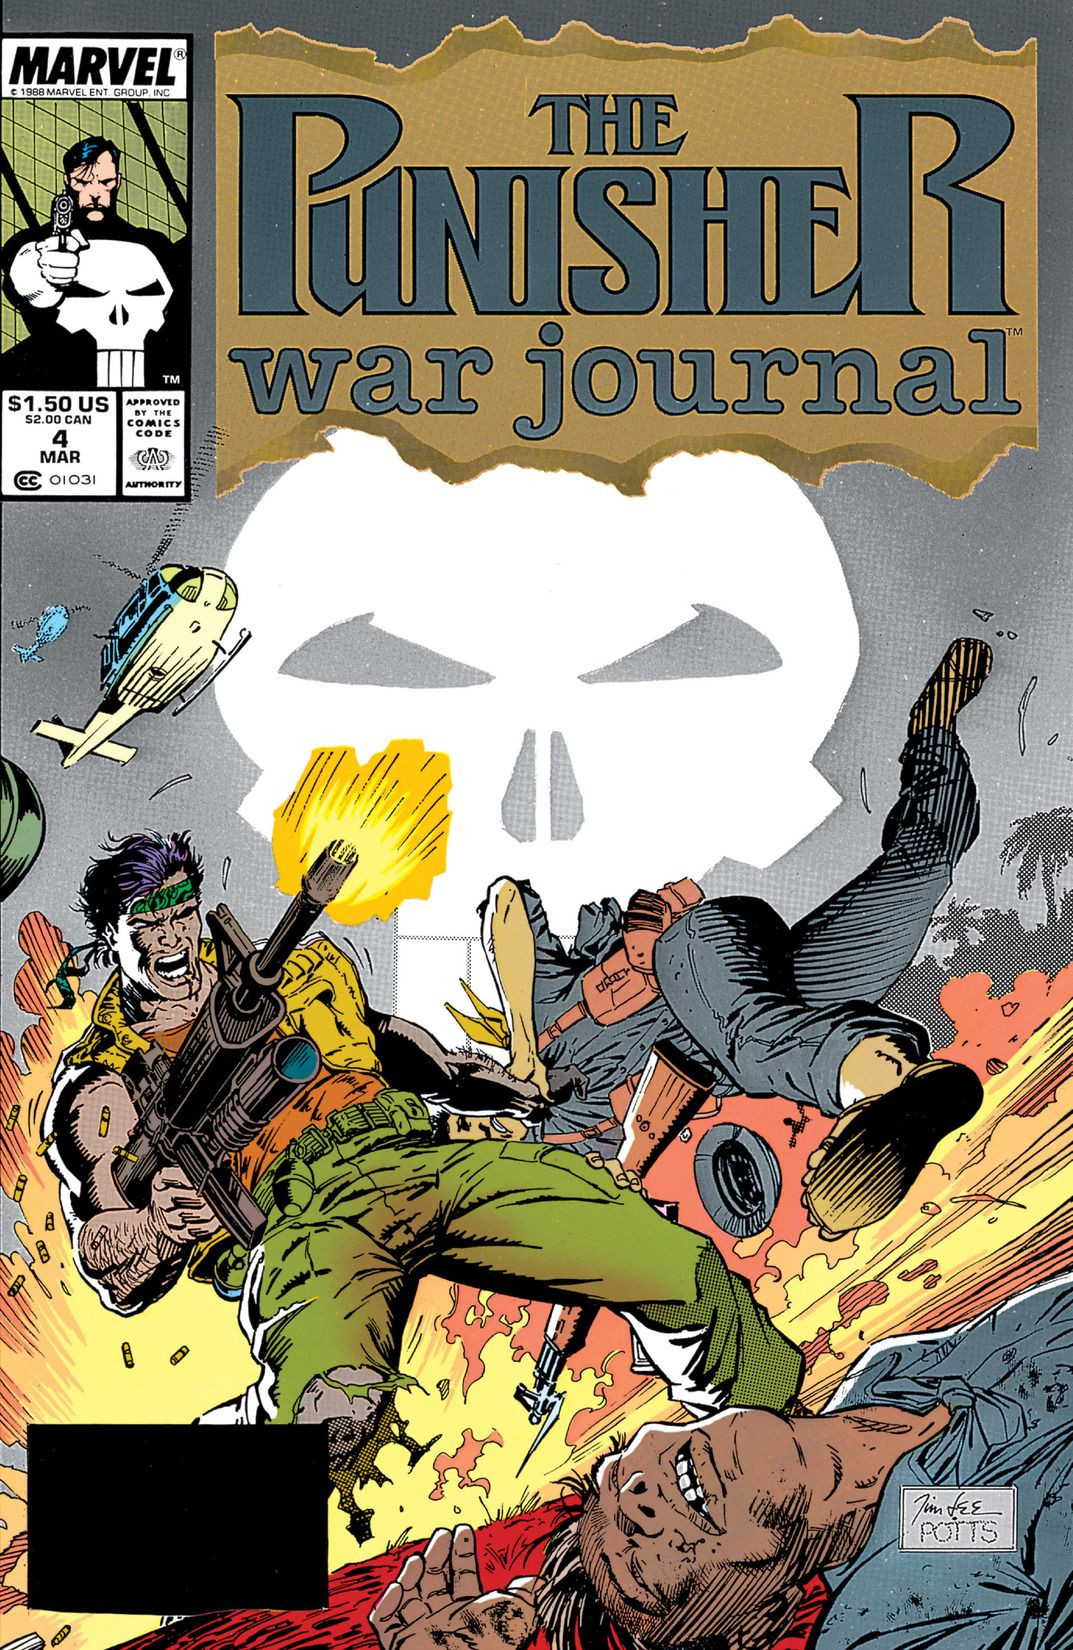 The Punisher War Journal #53 9.6 